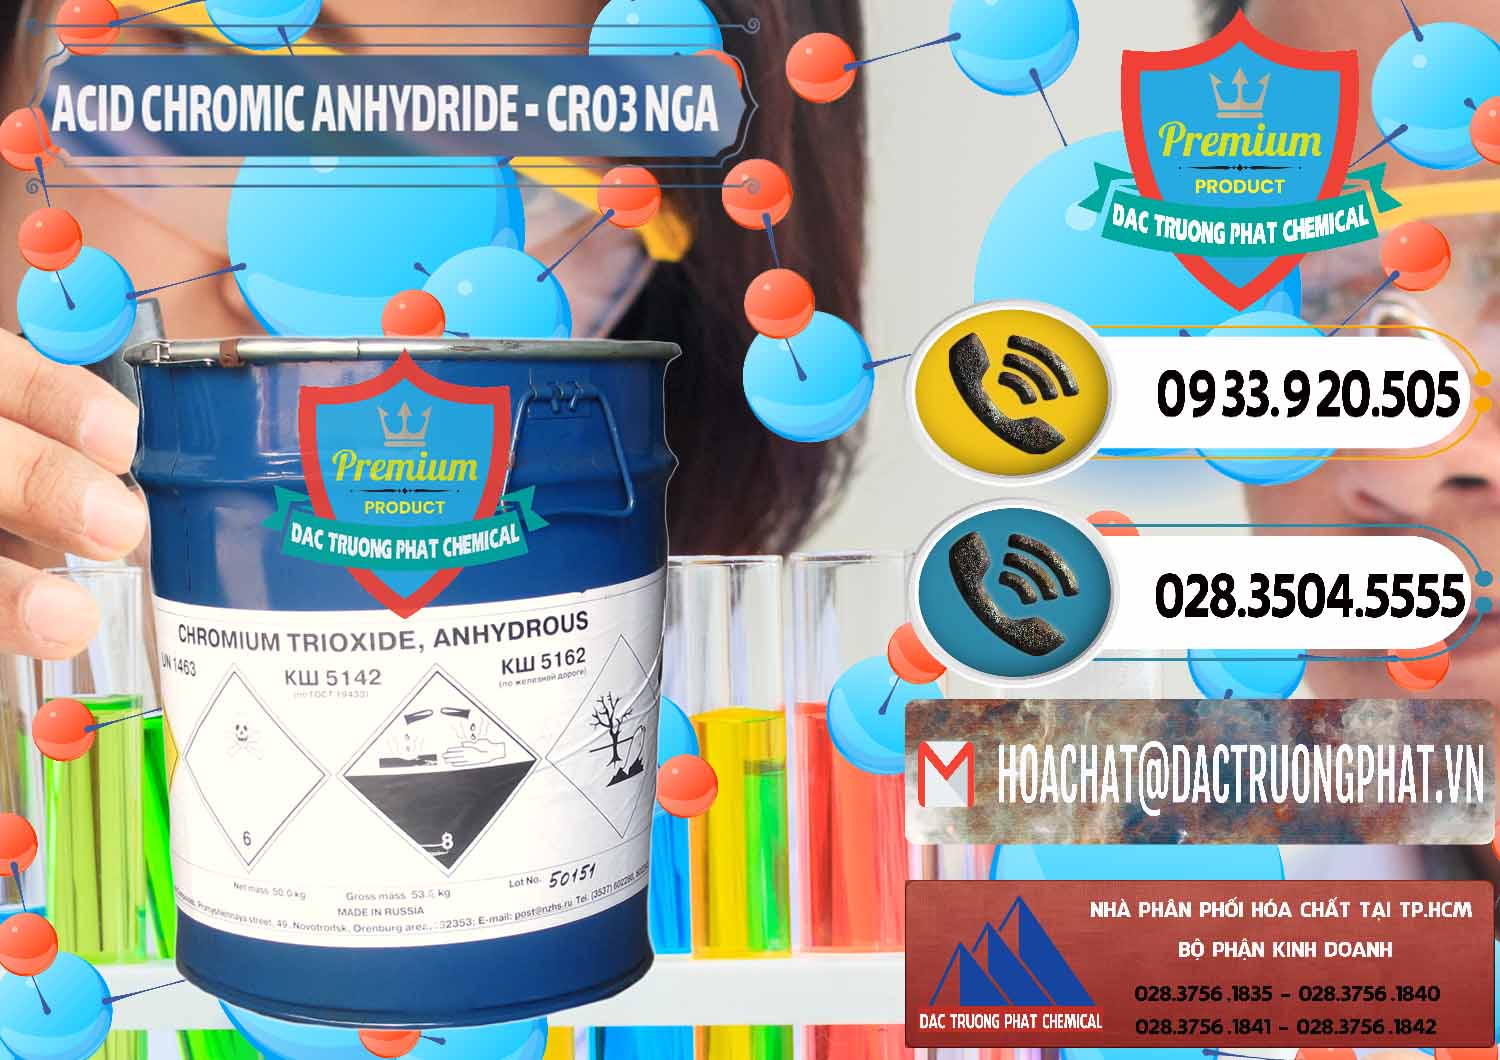 Công ty chuyên bán - cung cấp Acid Chromic Anhydride - Cromic CRO3 Nga Russia - 0006 - Nhà cung cấp - nhập khẩu hóa chất tại TP.HCM - hoachatdetnhuom.vn